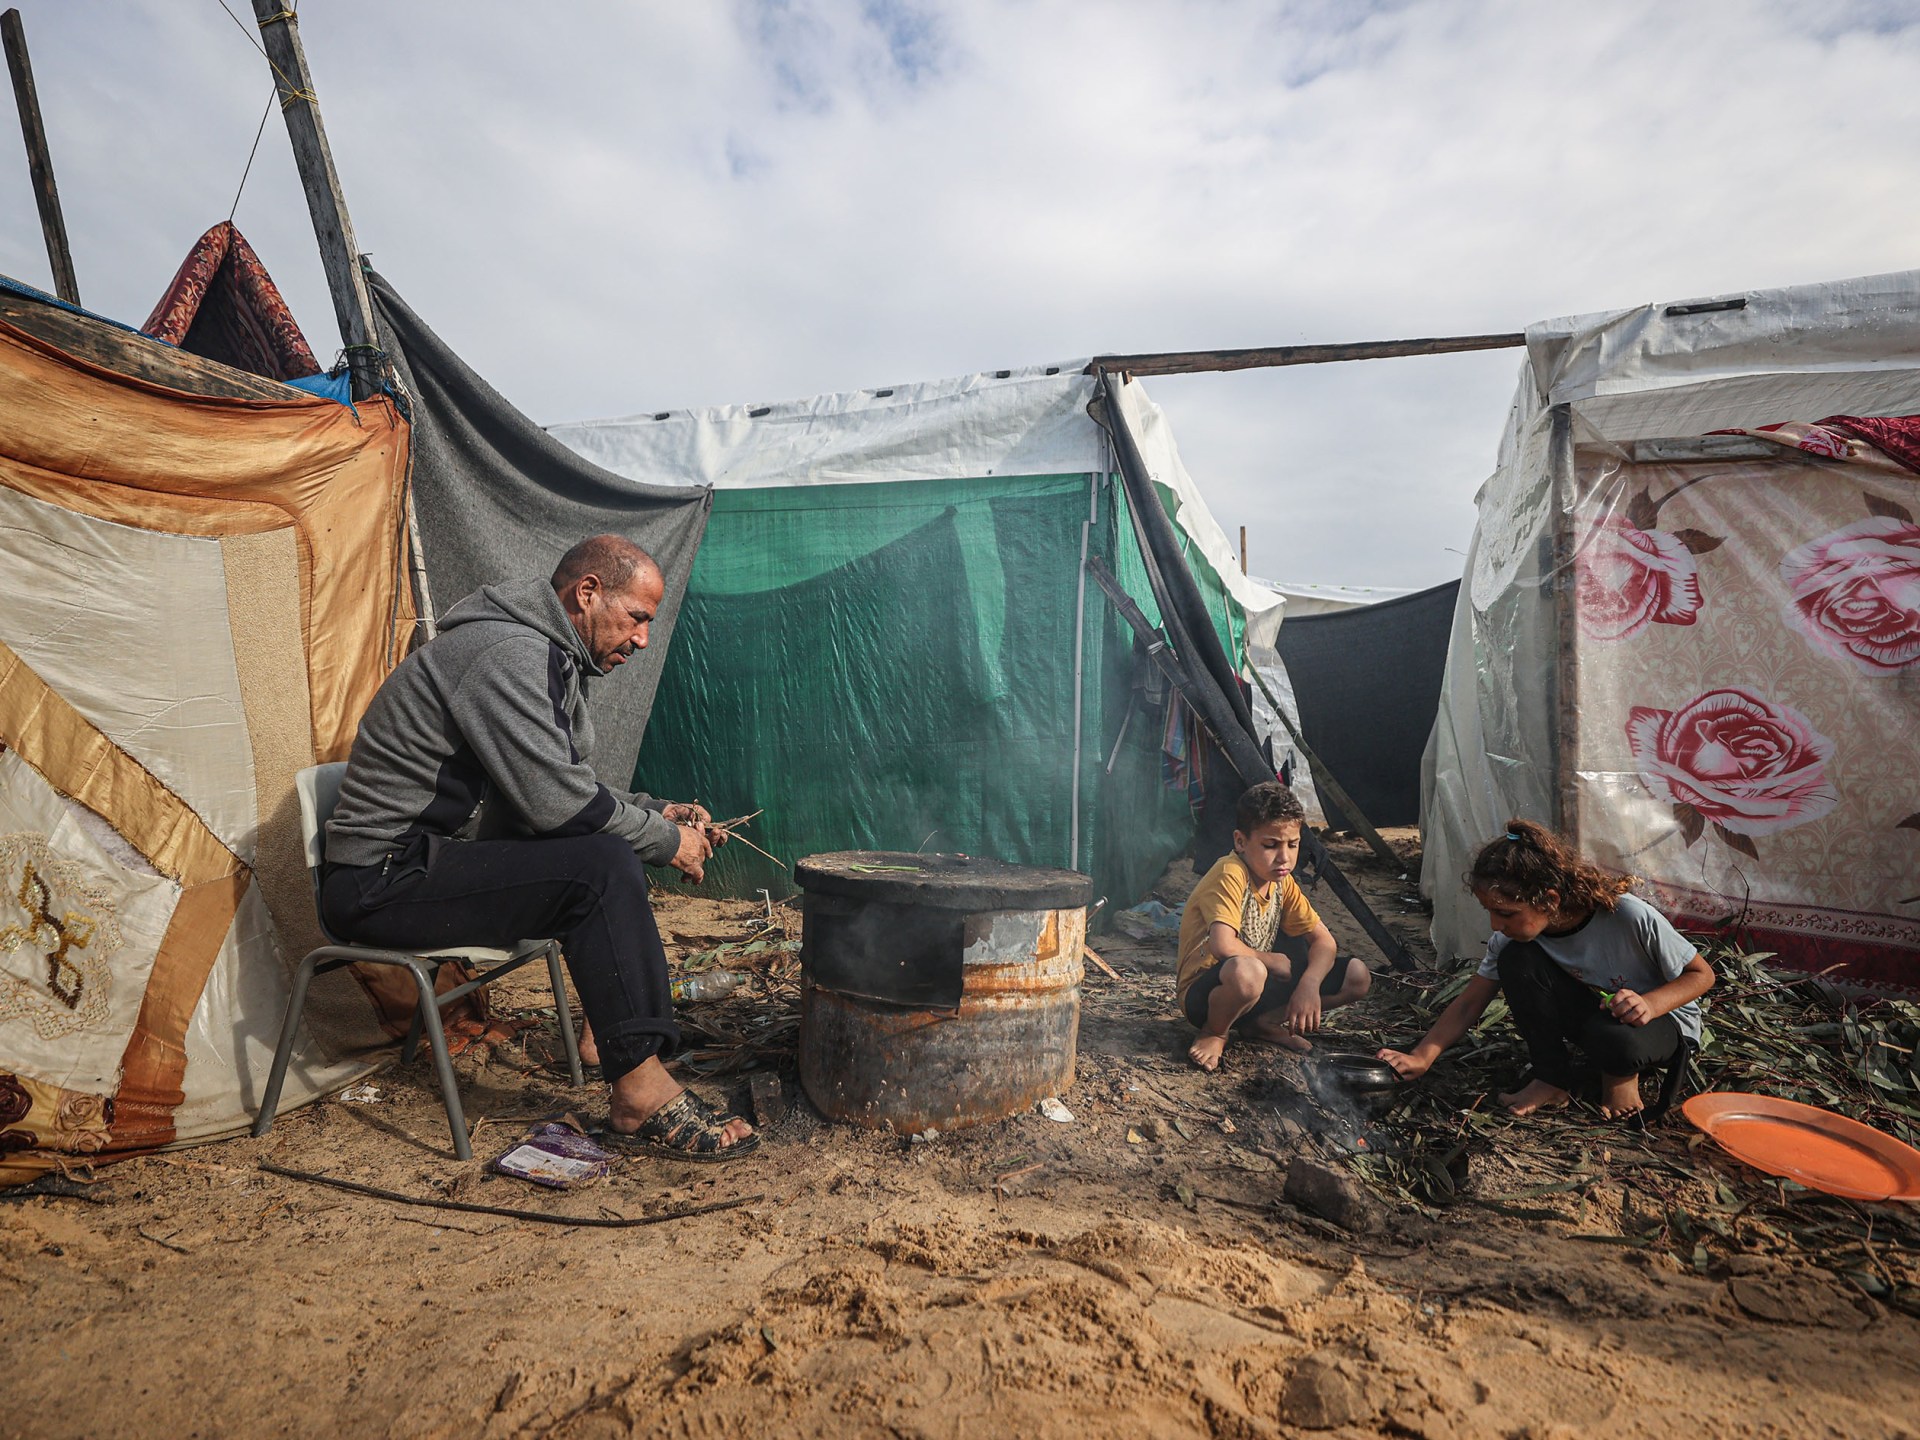 برنامج الغذاء العالمي: سكان غزة معرضون لخطر الموت جوعا | أخبار – البوكس نيوز